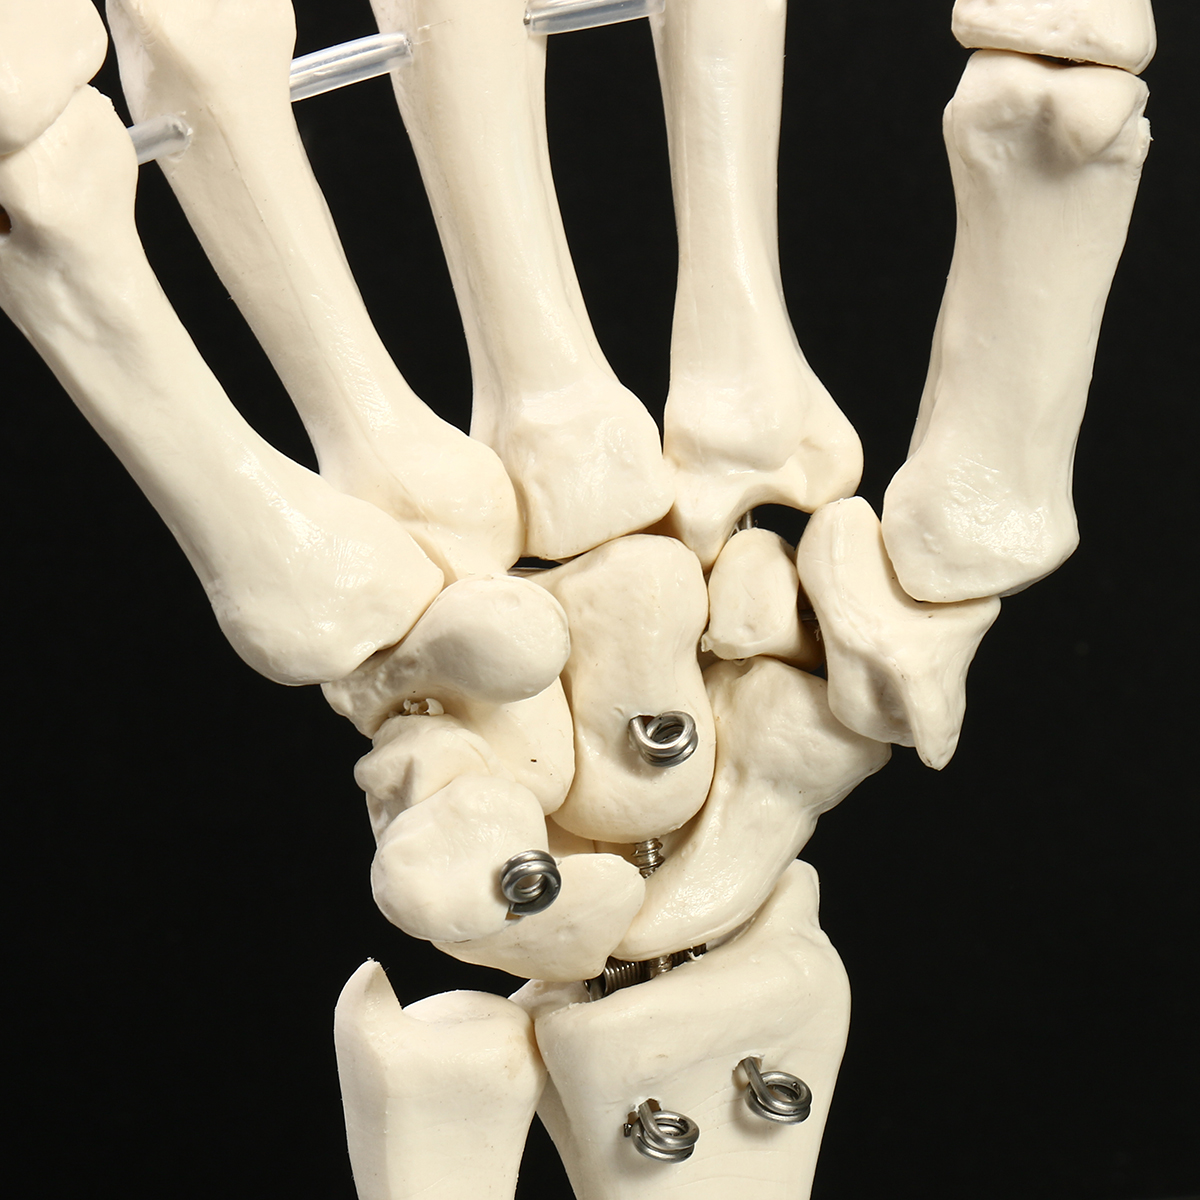 Скелет пальцев человека. Скелет запястья. Скелет руки. Кость руки. Человеческая кисть руки скелет.